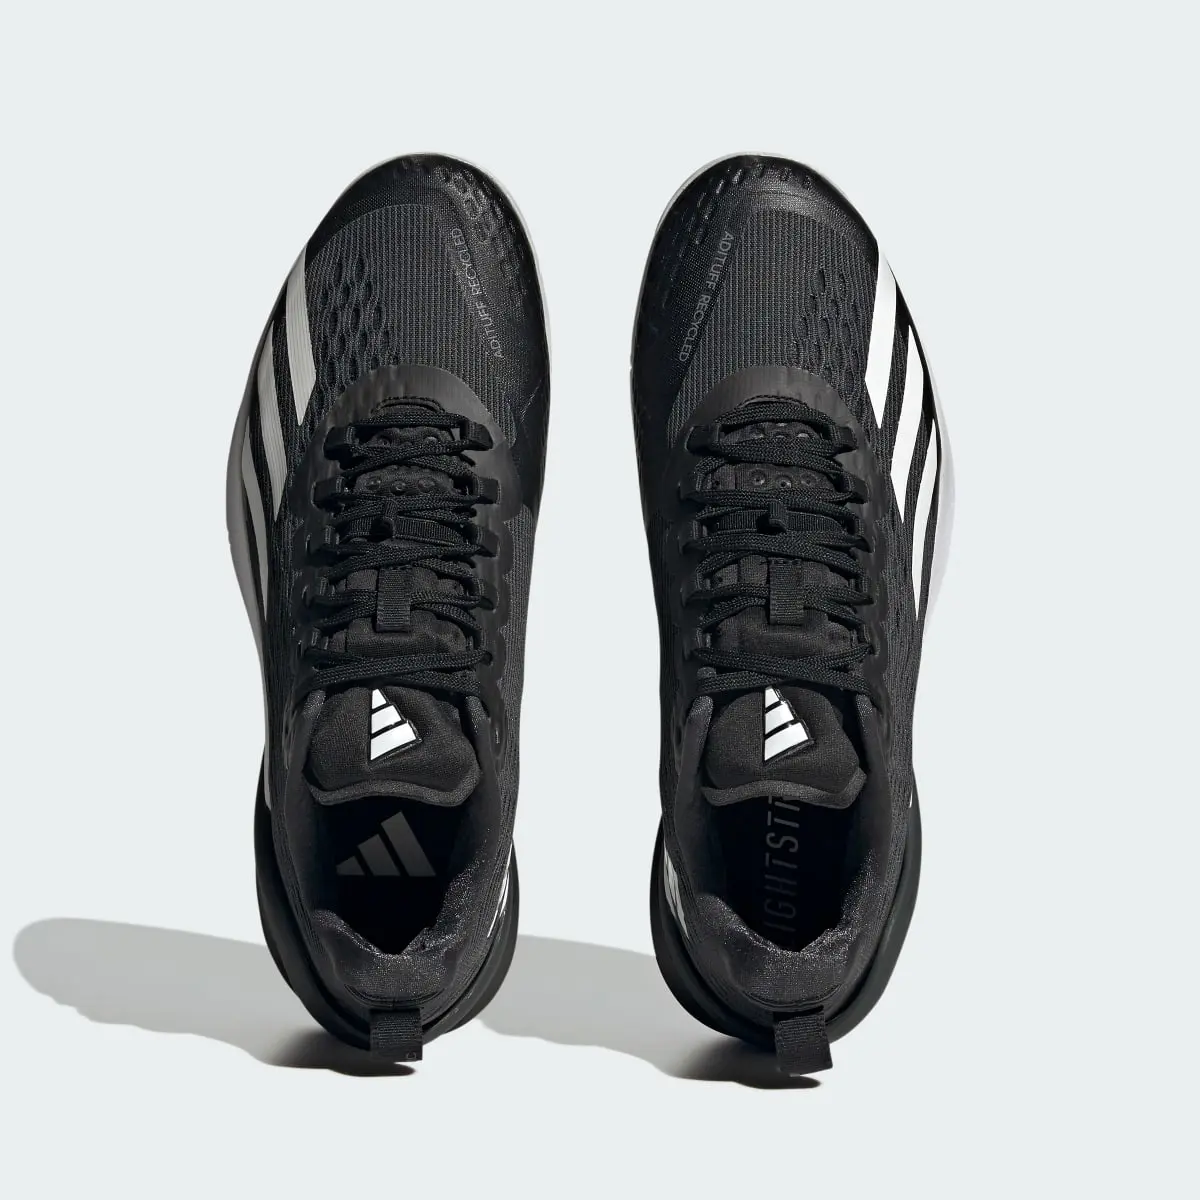 Adidas Adizero Cybersonic Tennis Shoes. 3